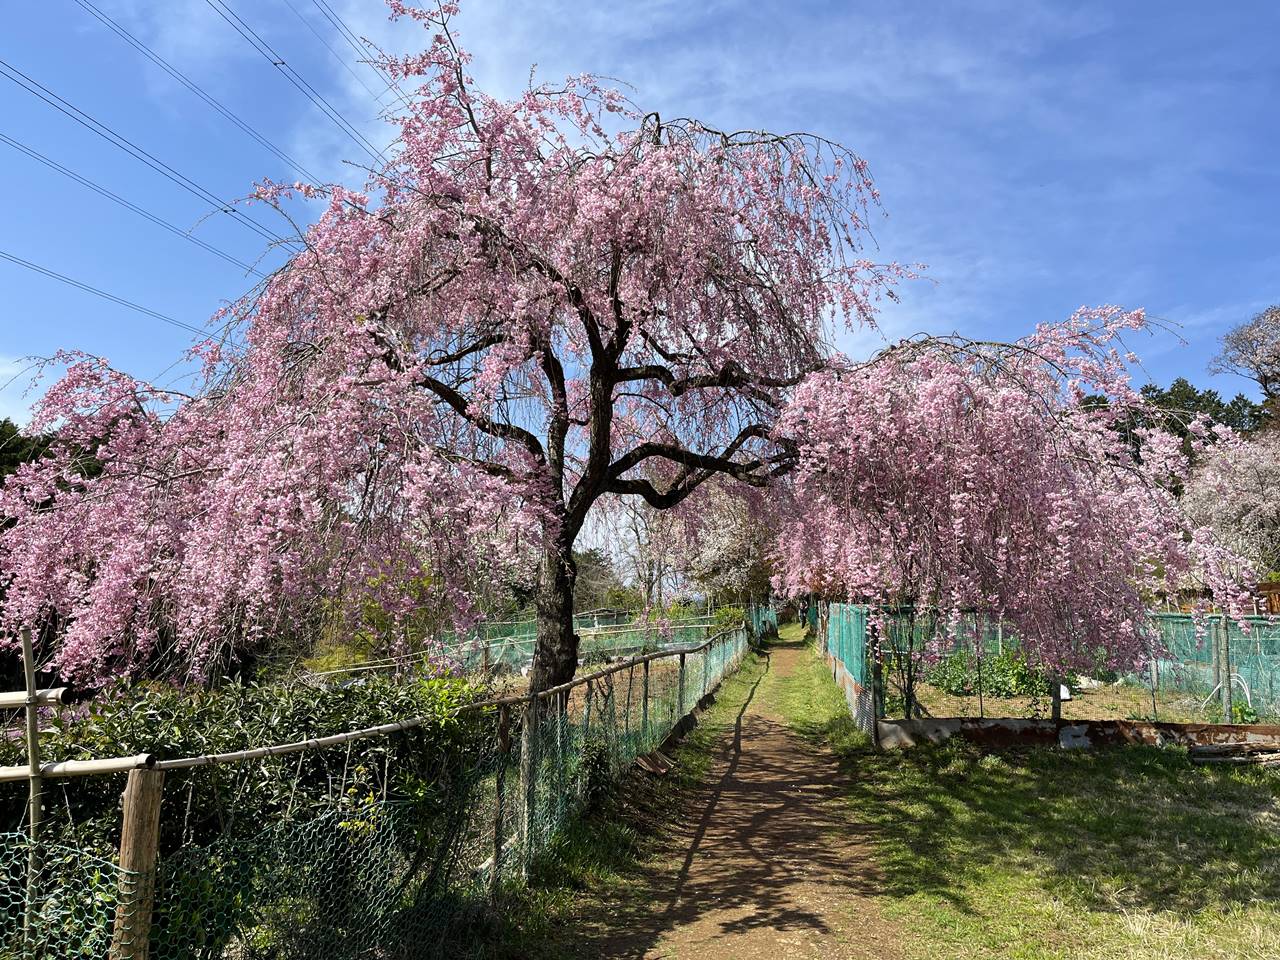 【奥武蔵】ユガテのしだれ桜 満開の桜咲く桃源郷へ 春の登山